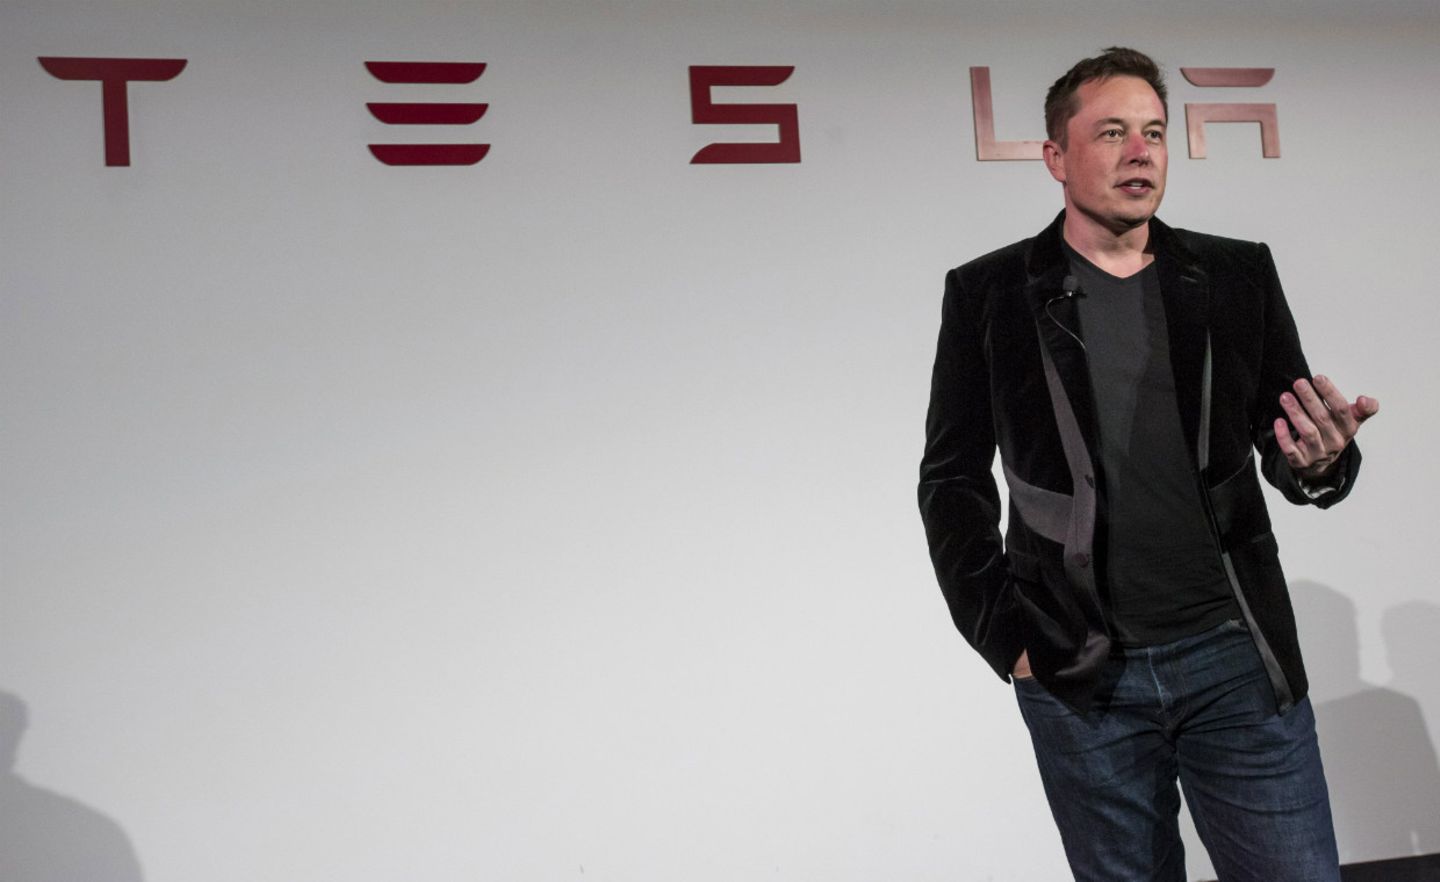 Mit widersprüchlichen Aussagen hat Elon Musk die Investoren zuletzt verunsichert